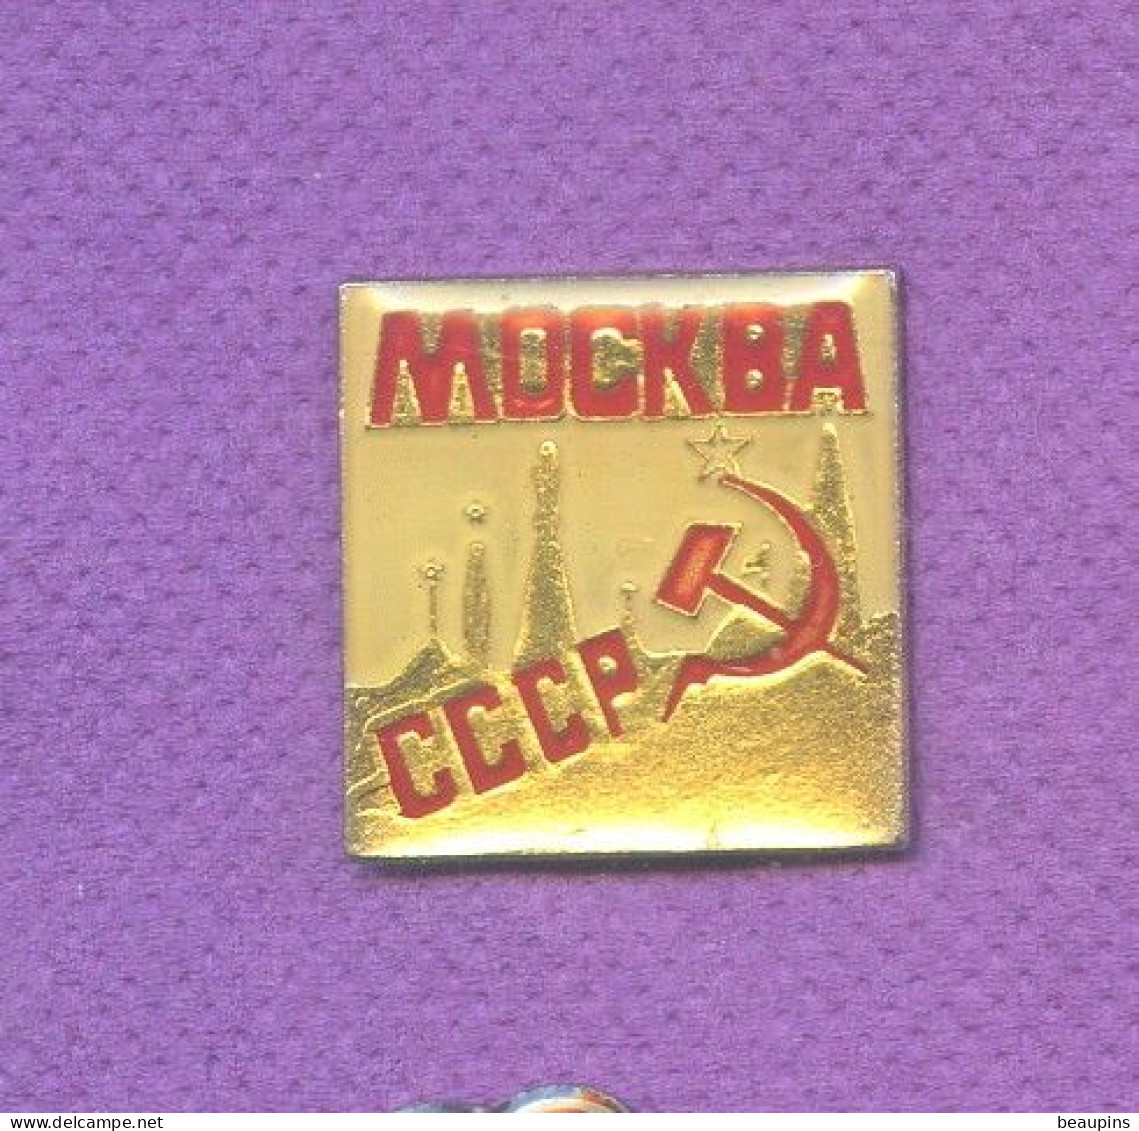 Rare Pins Russie Urss Cccp Faucille Marteau Politique N329 - Administration